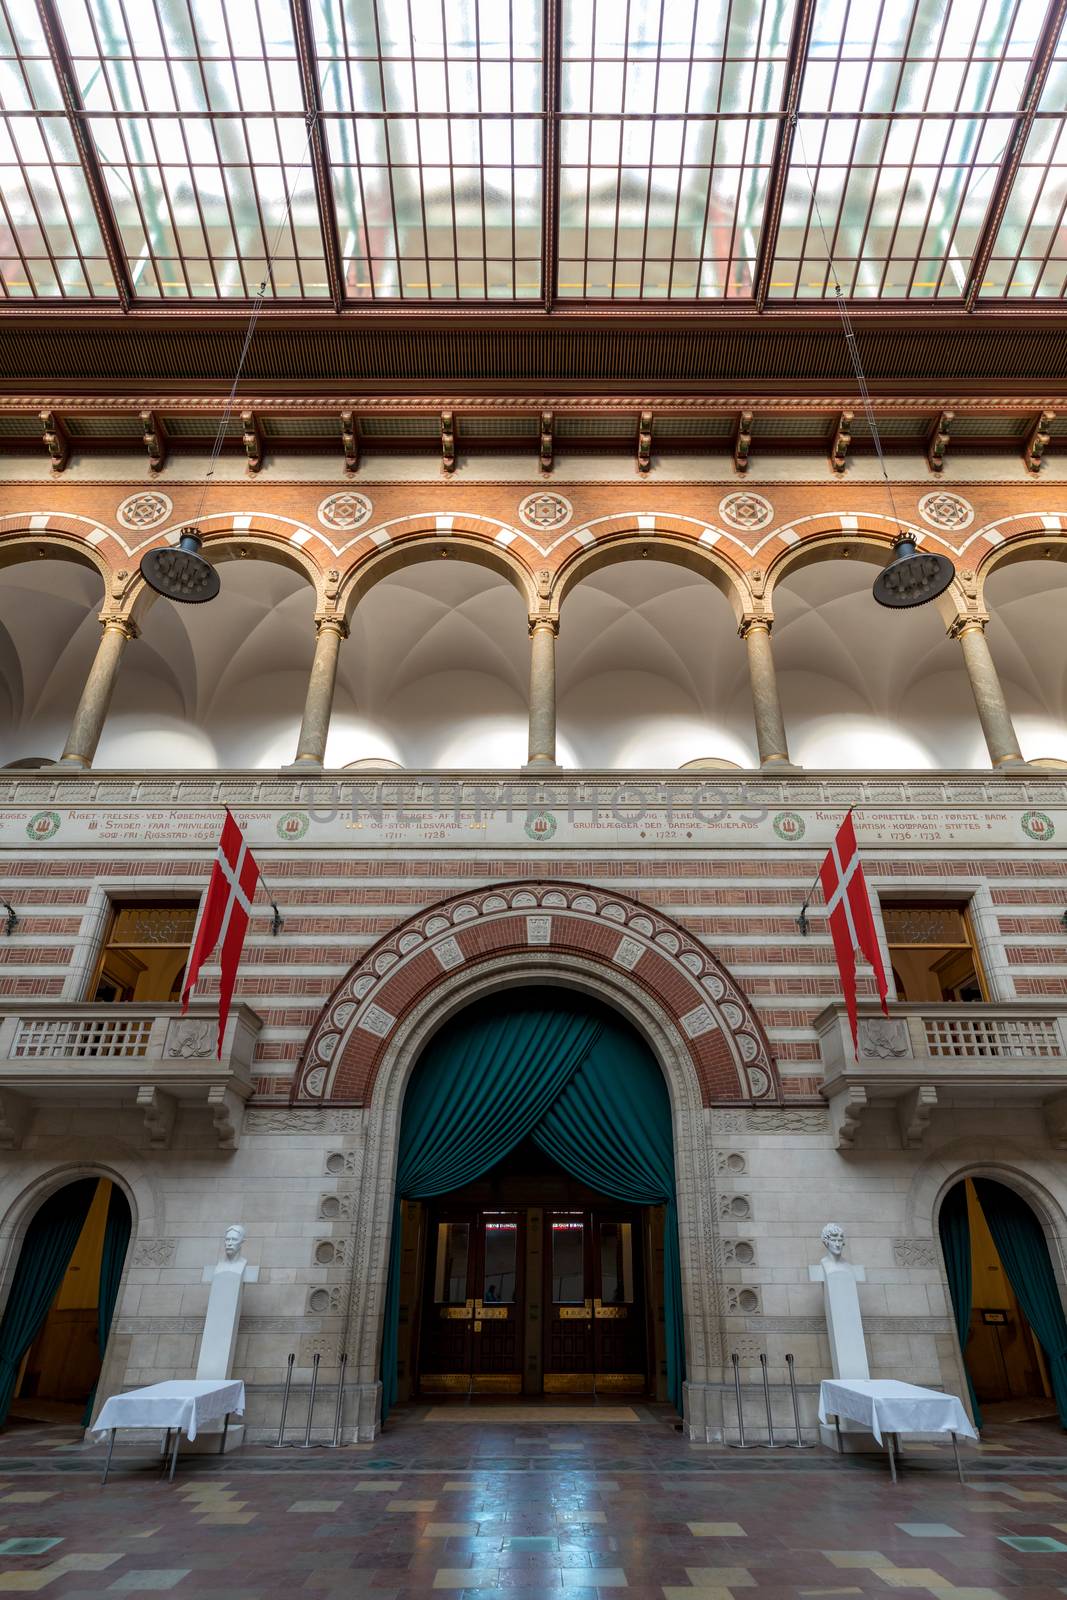 Copenhagen town hall Interior by vichie81